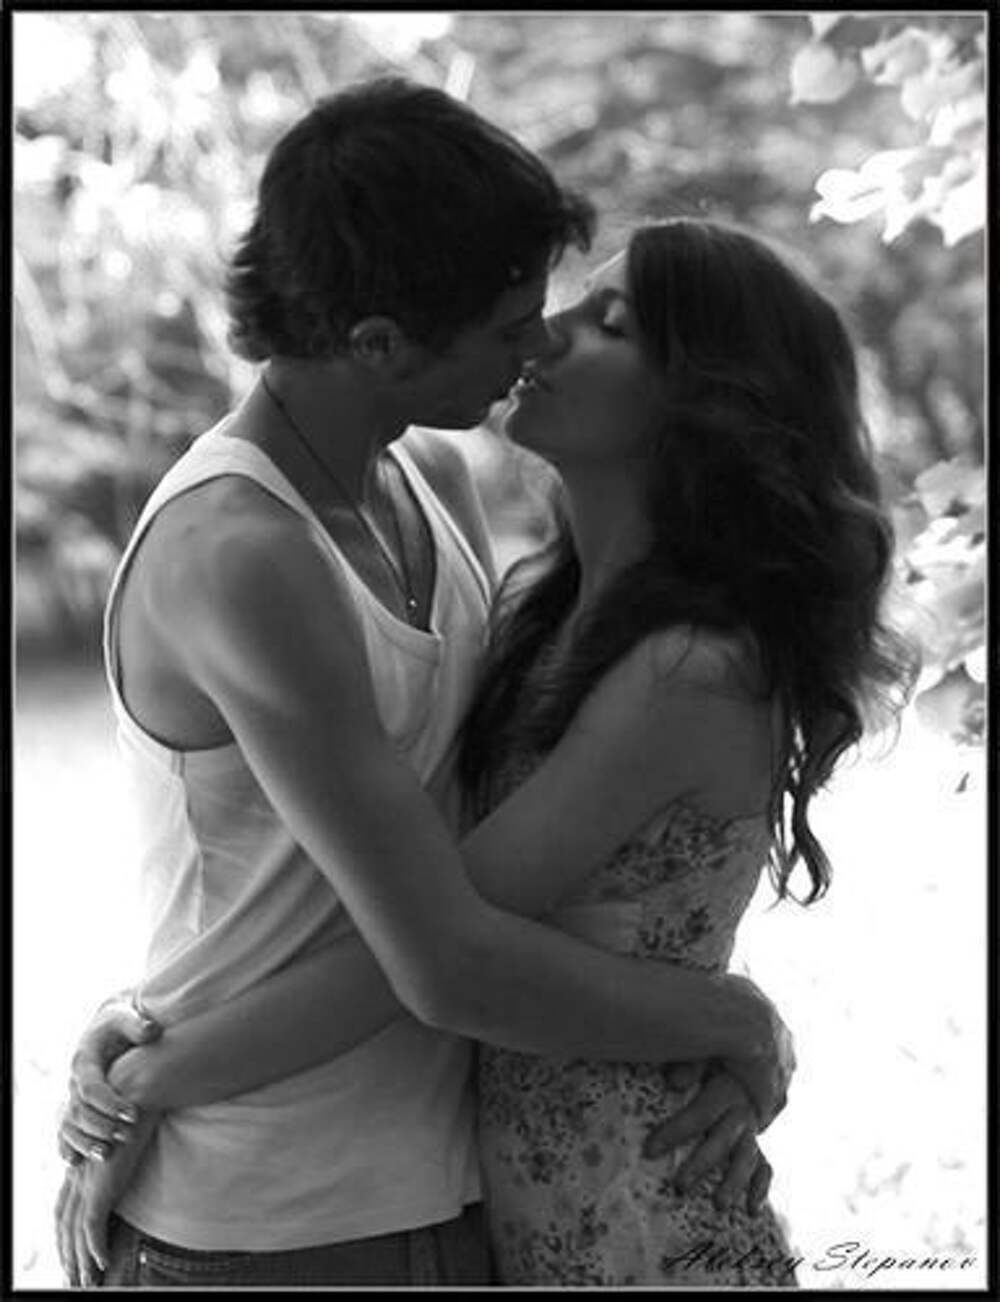 Целует сильнее. Обнять и поцеловать. Страстный поцелуй. Обнимаются и целуются. Поцелуй картинки красивые.